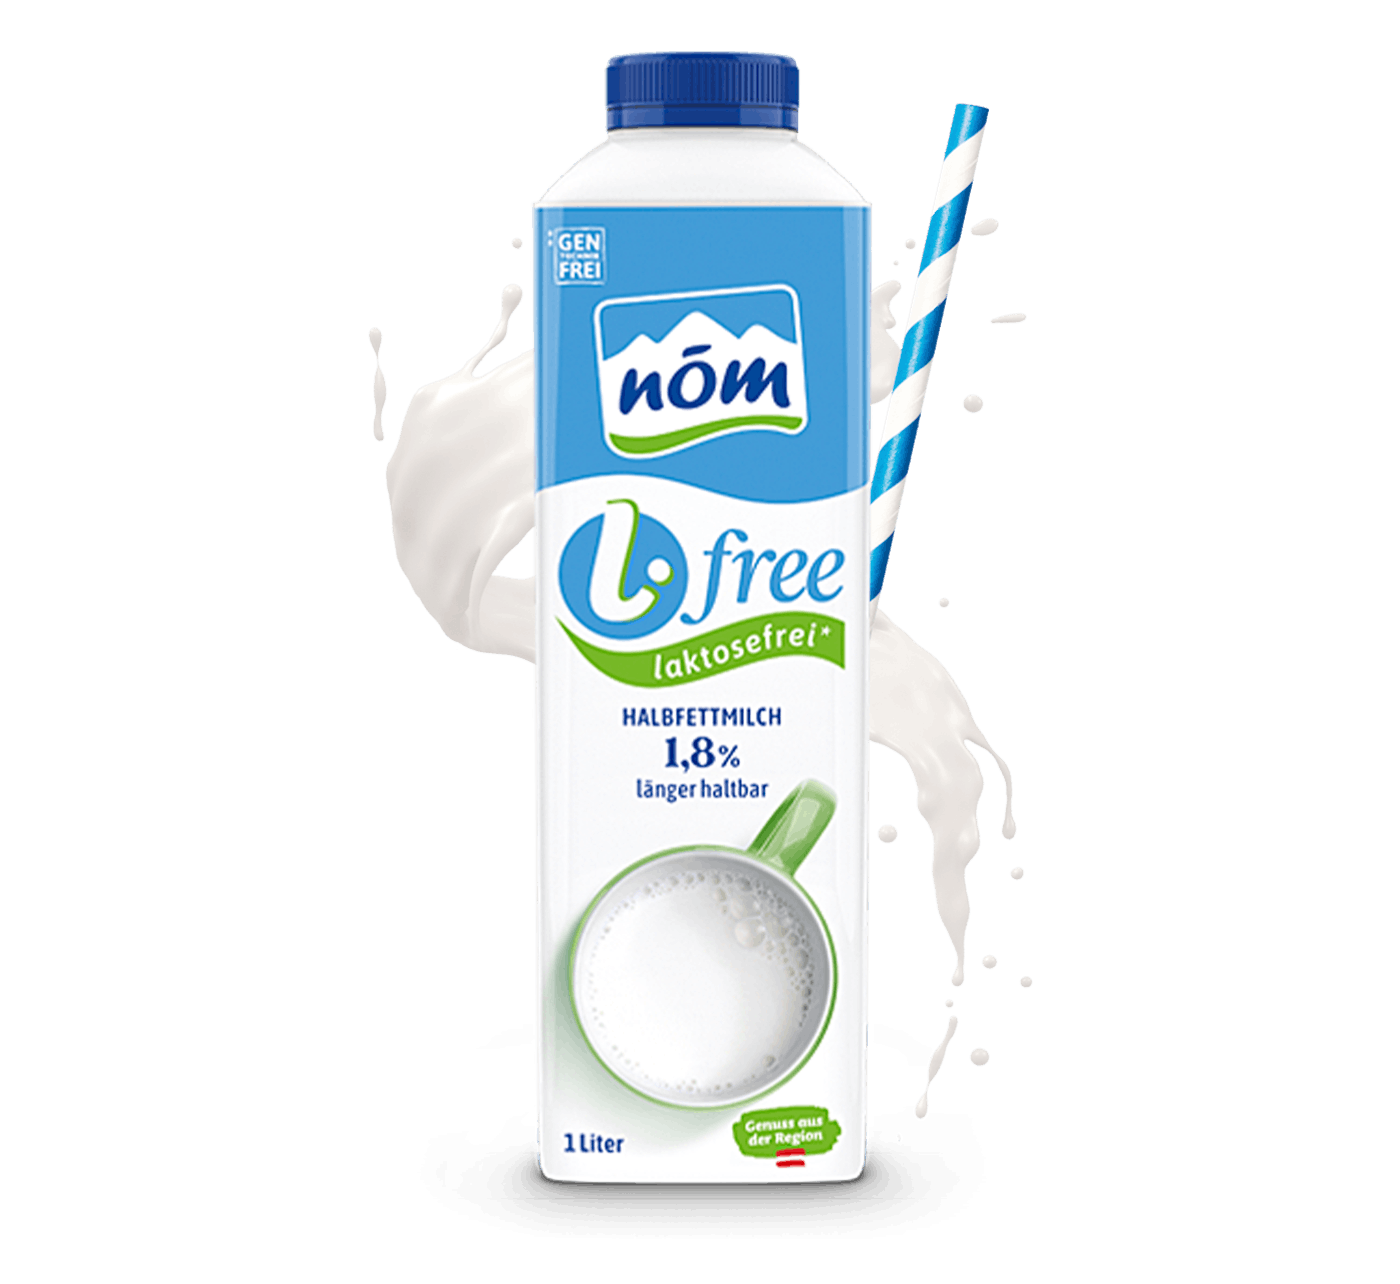 NÖM l.free Halbfettmilch laktosefreie im 1 Liter Tetra Pak mit Milchsplash